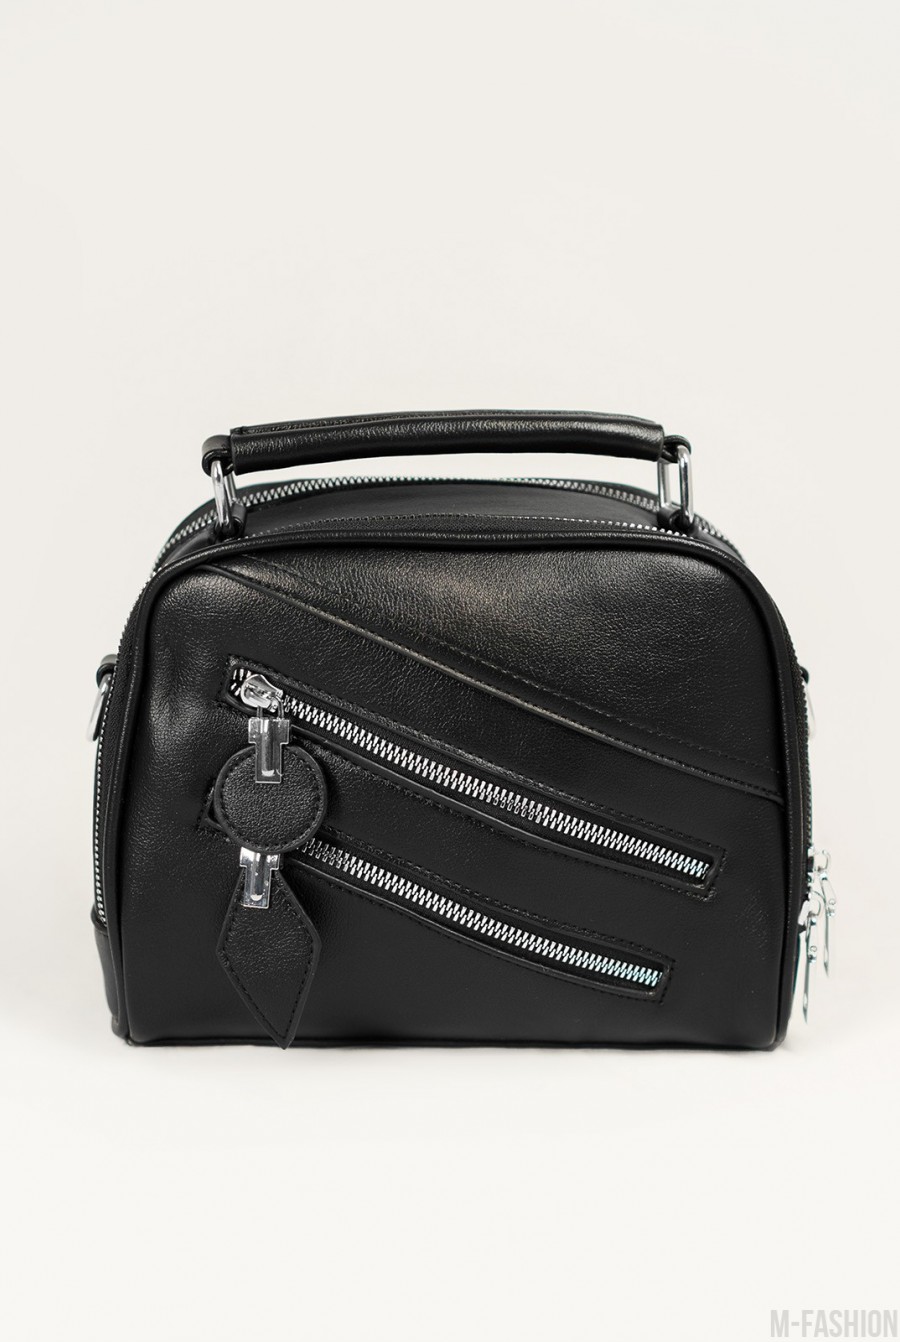 Черная кожаная сумка-чемоданчик с молниями - Фото 1